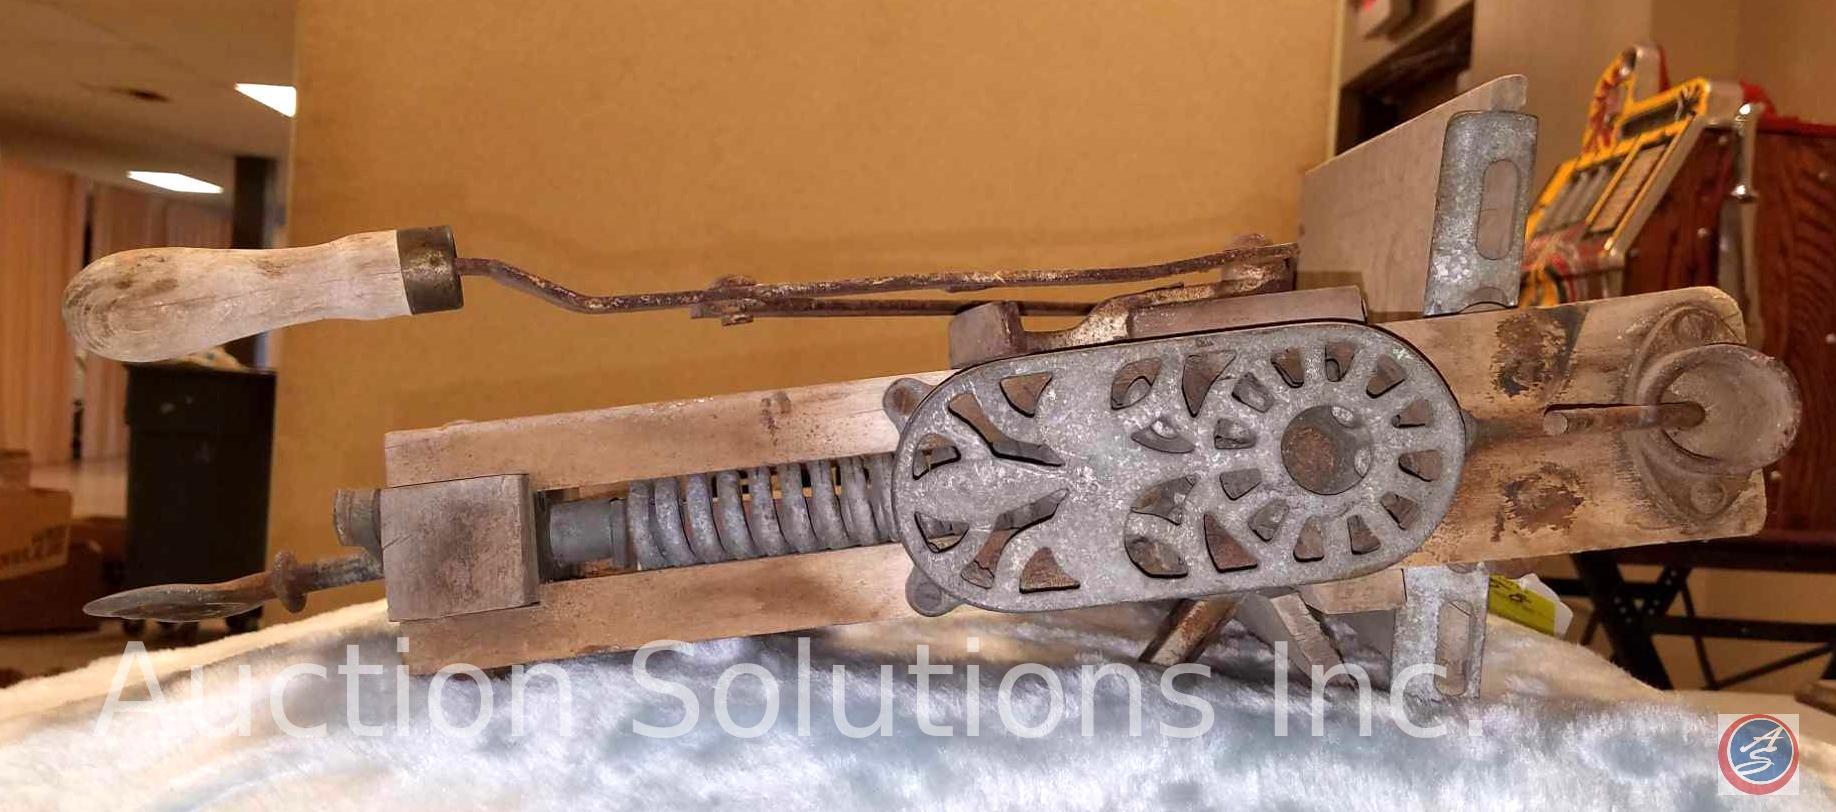 Antique Clothing Hand-Crank Wringer Marked "Steel Spiral Pressure Springs"